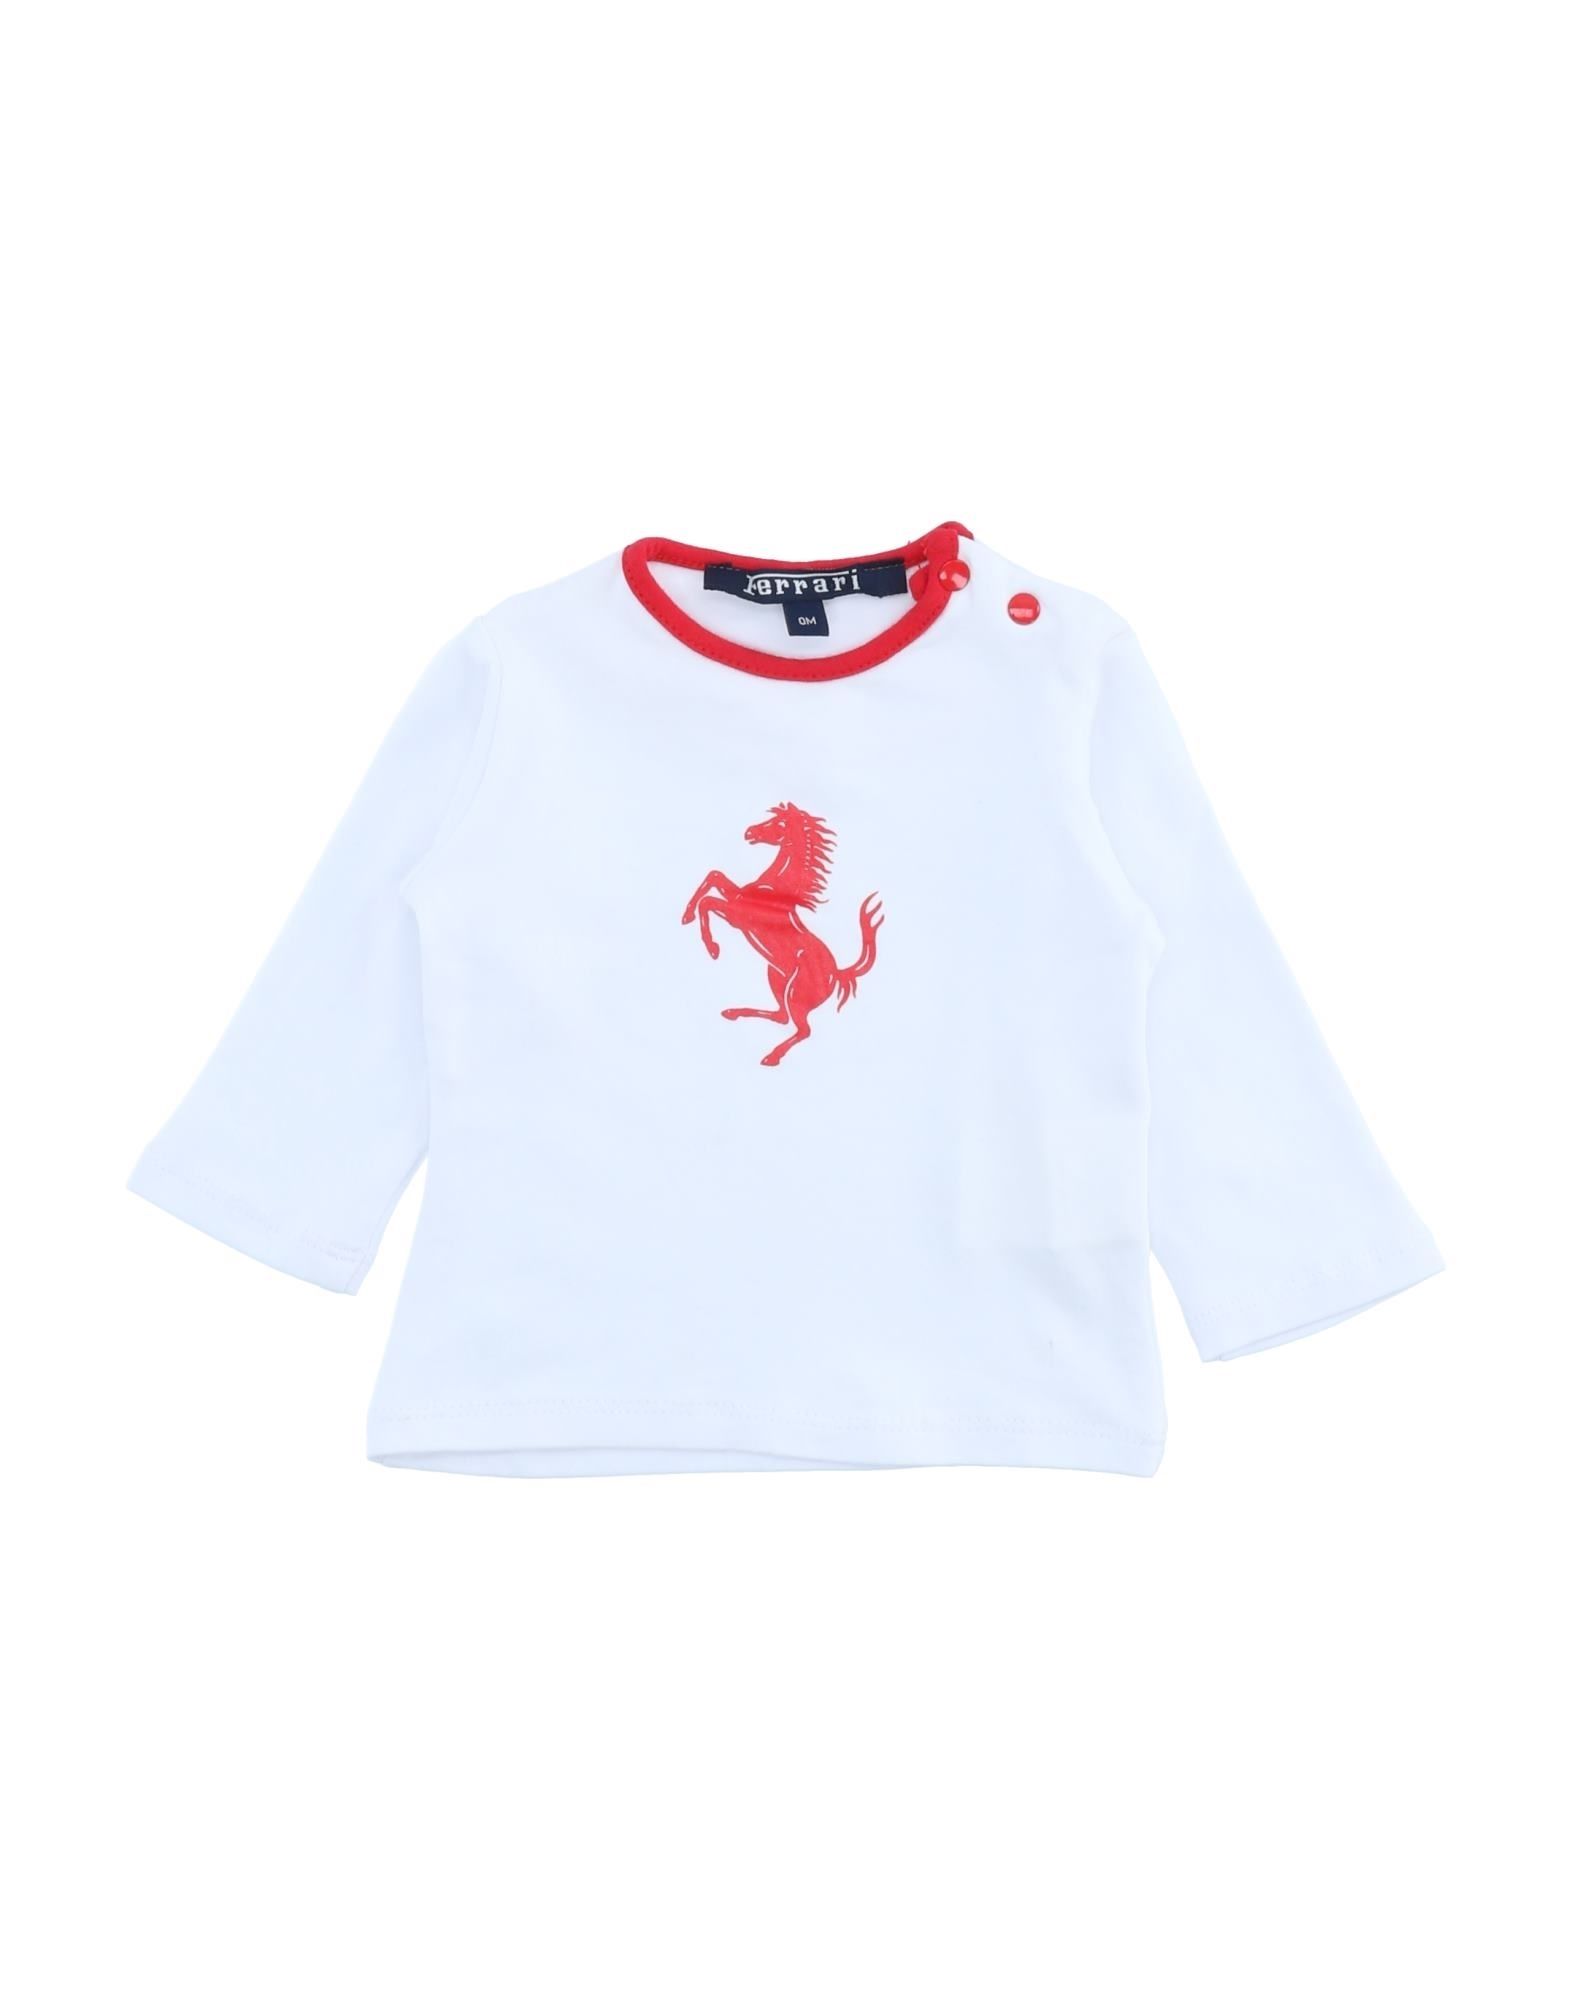 Ferrari Kids' T-shirts In White